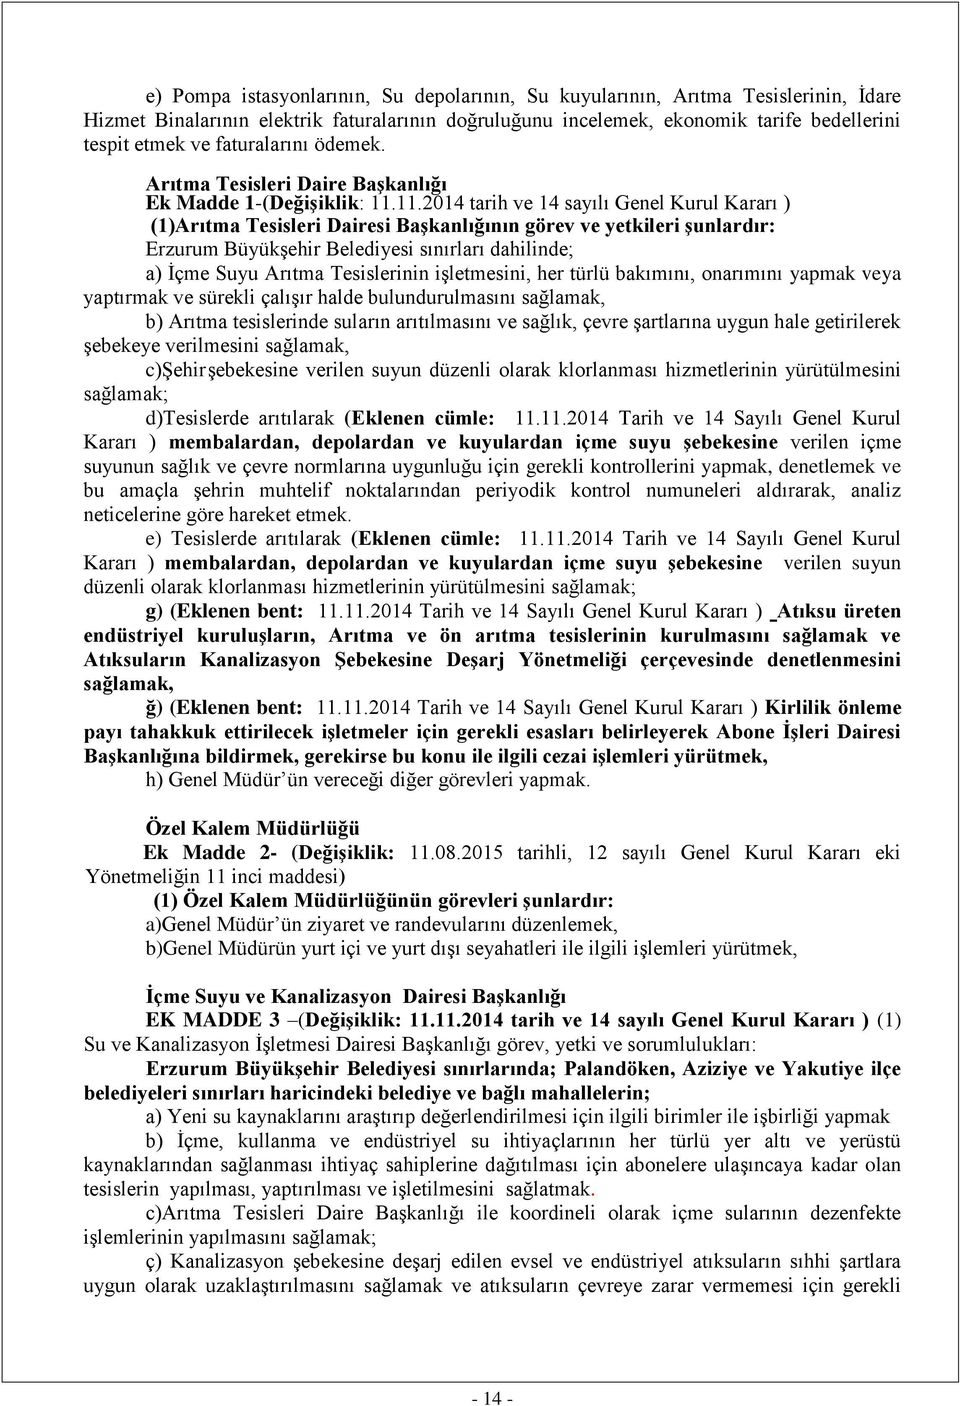 11.2014 tarih ve 14 sayılı Genel Kurul Kararı ) (1)Arıtma Tesisleri Dairesi Başkanlığının görev ve yetkileri şunlardır: Erzurum Büyükşehir Belediyesi sınırları dahilinde; a) İçme Suyu Arıtma